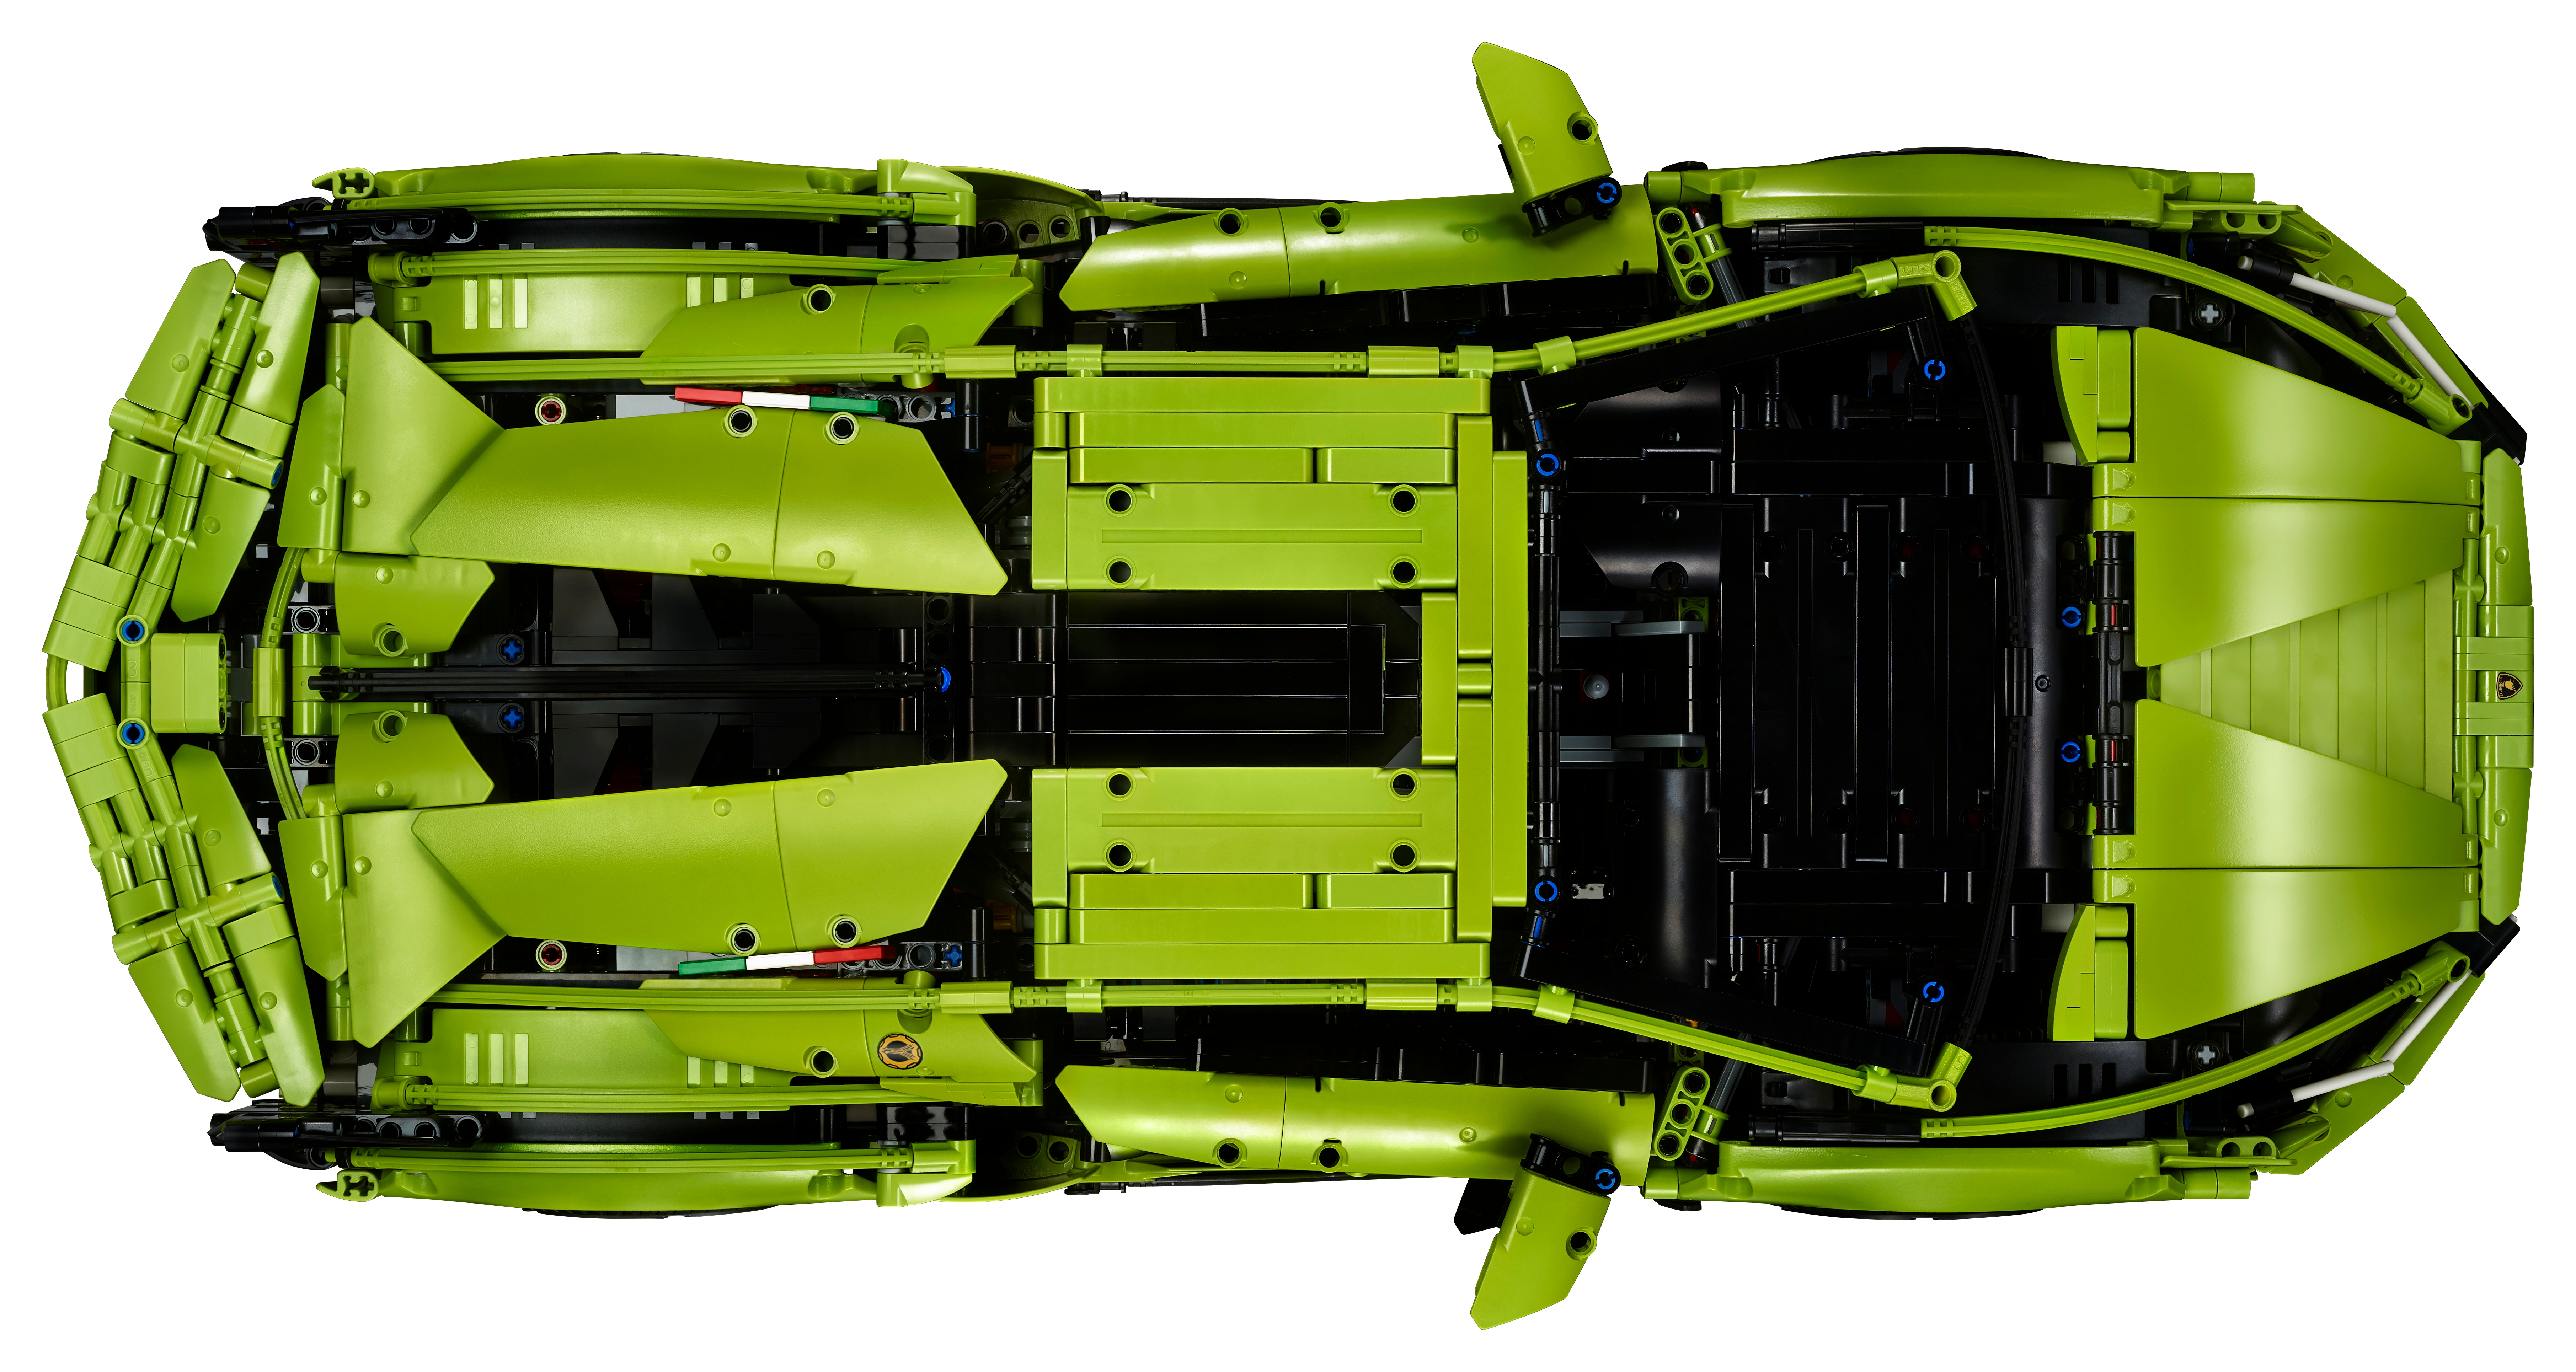 Lego Technic Lamborghini Sian FKP 37 kit announced - Autoblog